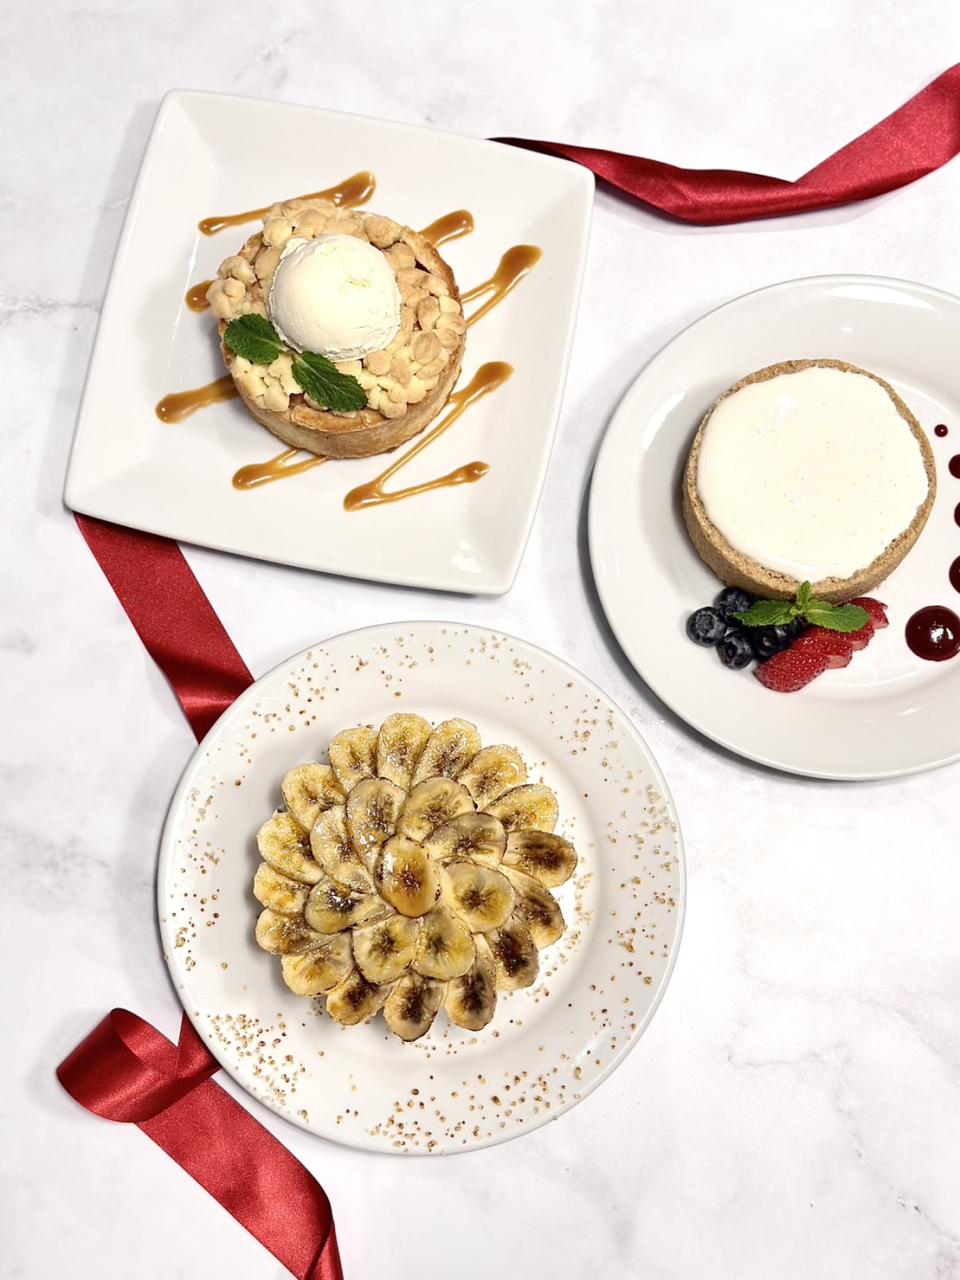 茹絲葵與「WUnique Pâtisserie」聯名，以茹絲葵的經典甜點為靈感研發出週年慶甜點禮盒。